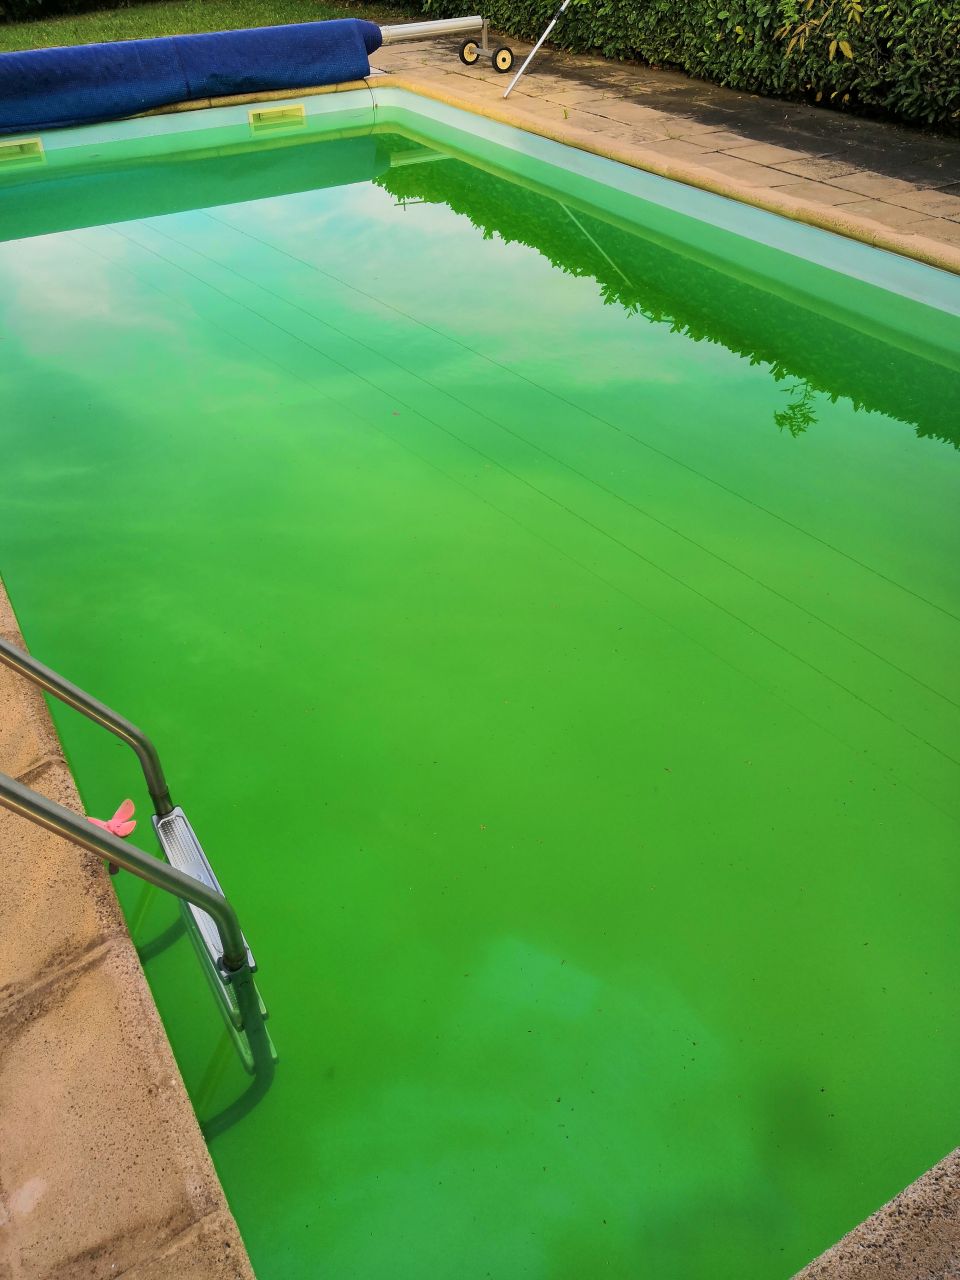 Comment utiliser du sulfate de cuivre dans sa piscine ? - TUTO